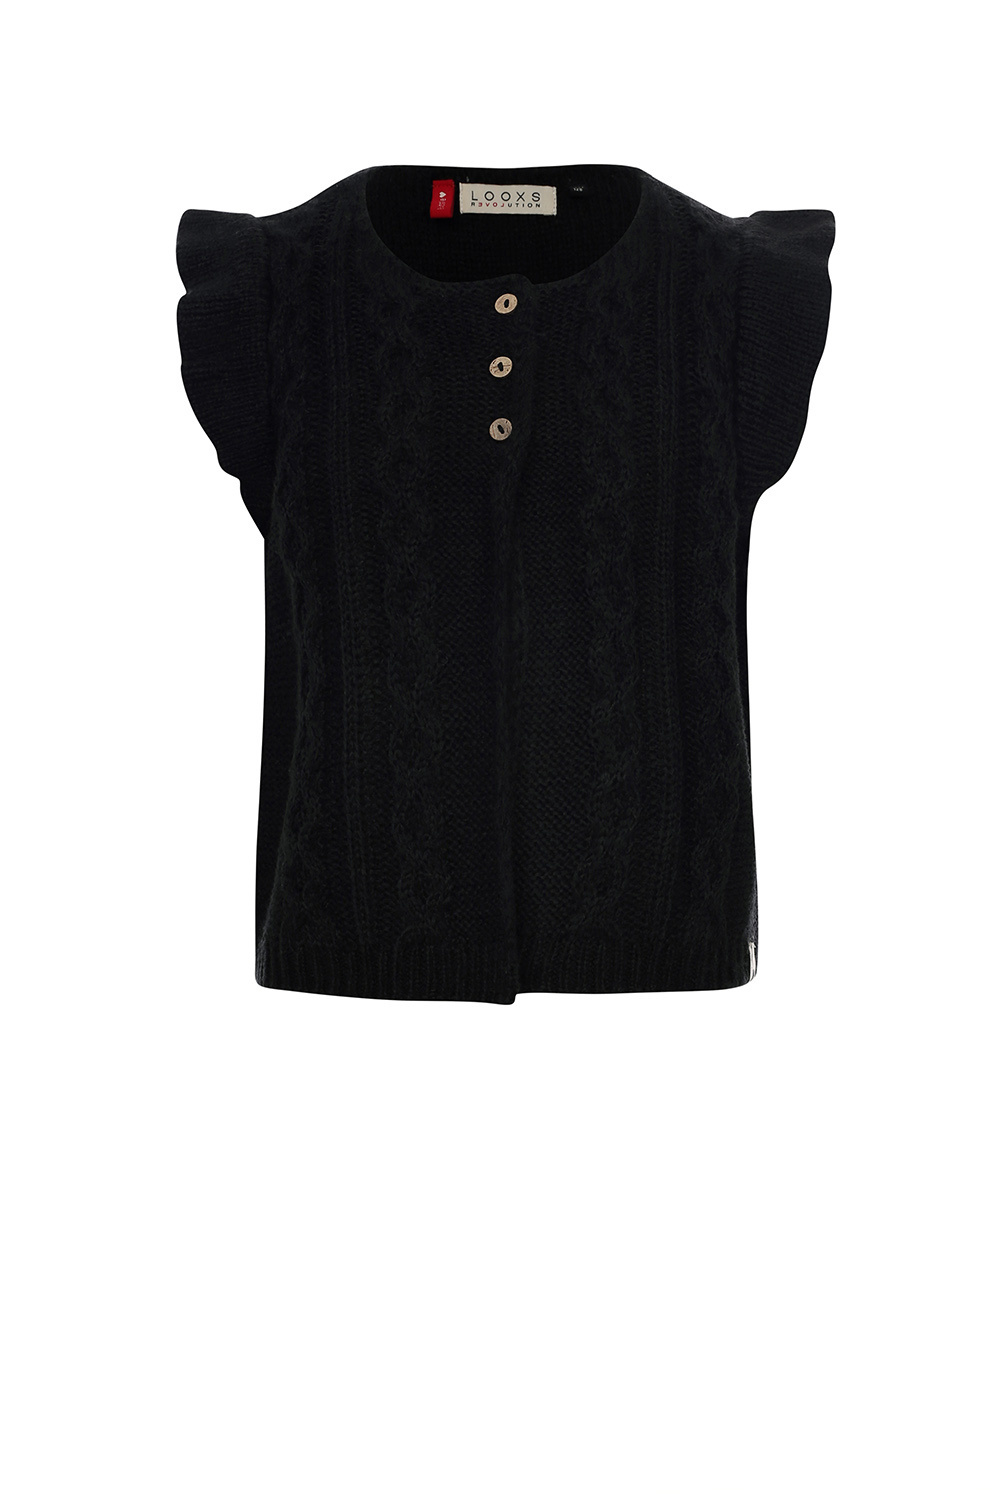 Looxs Revolution 2332-7314-099 Meisjes Sweater/Vest - Maat 110 - Zwart van 100%ACRYLIC